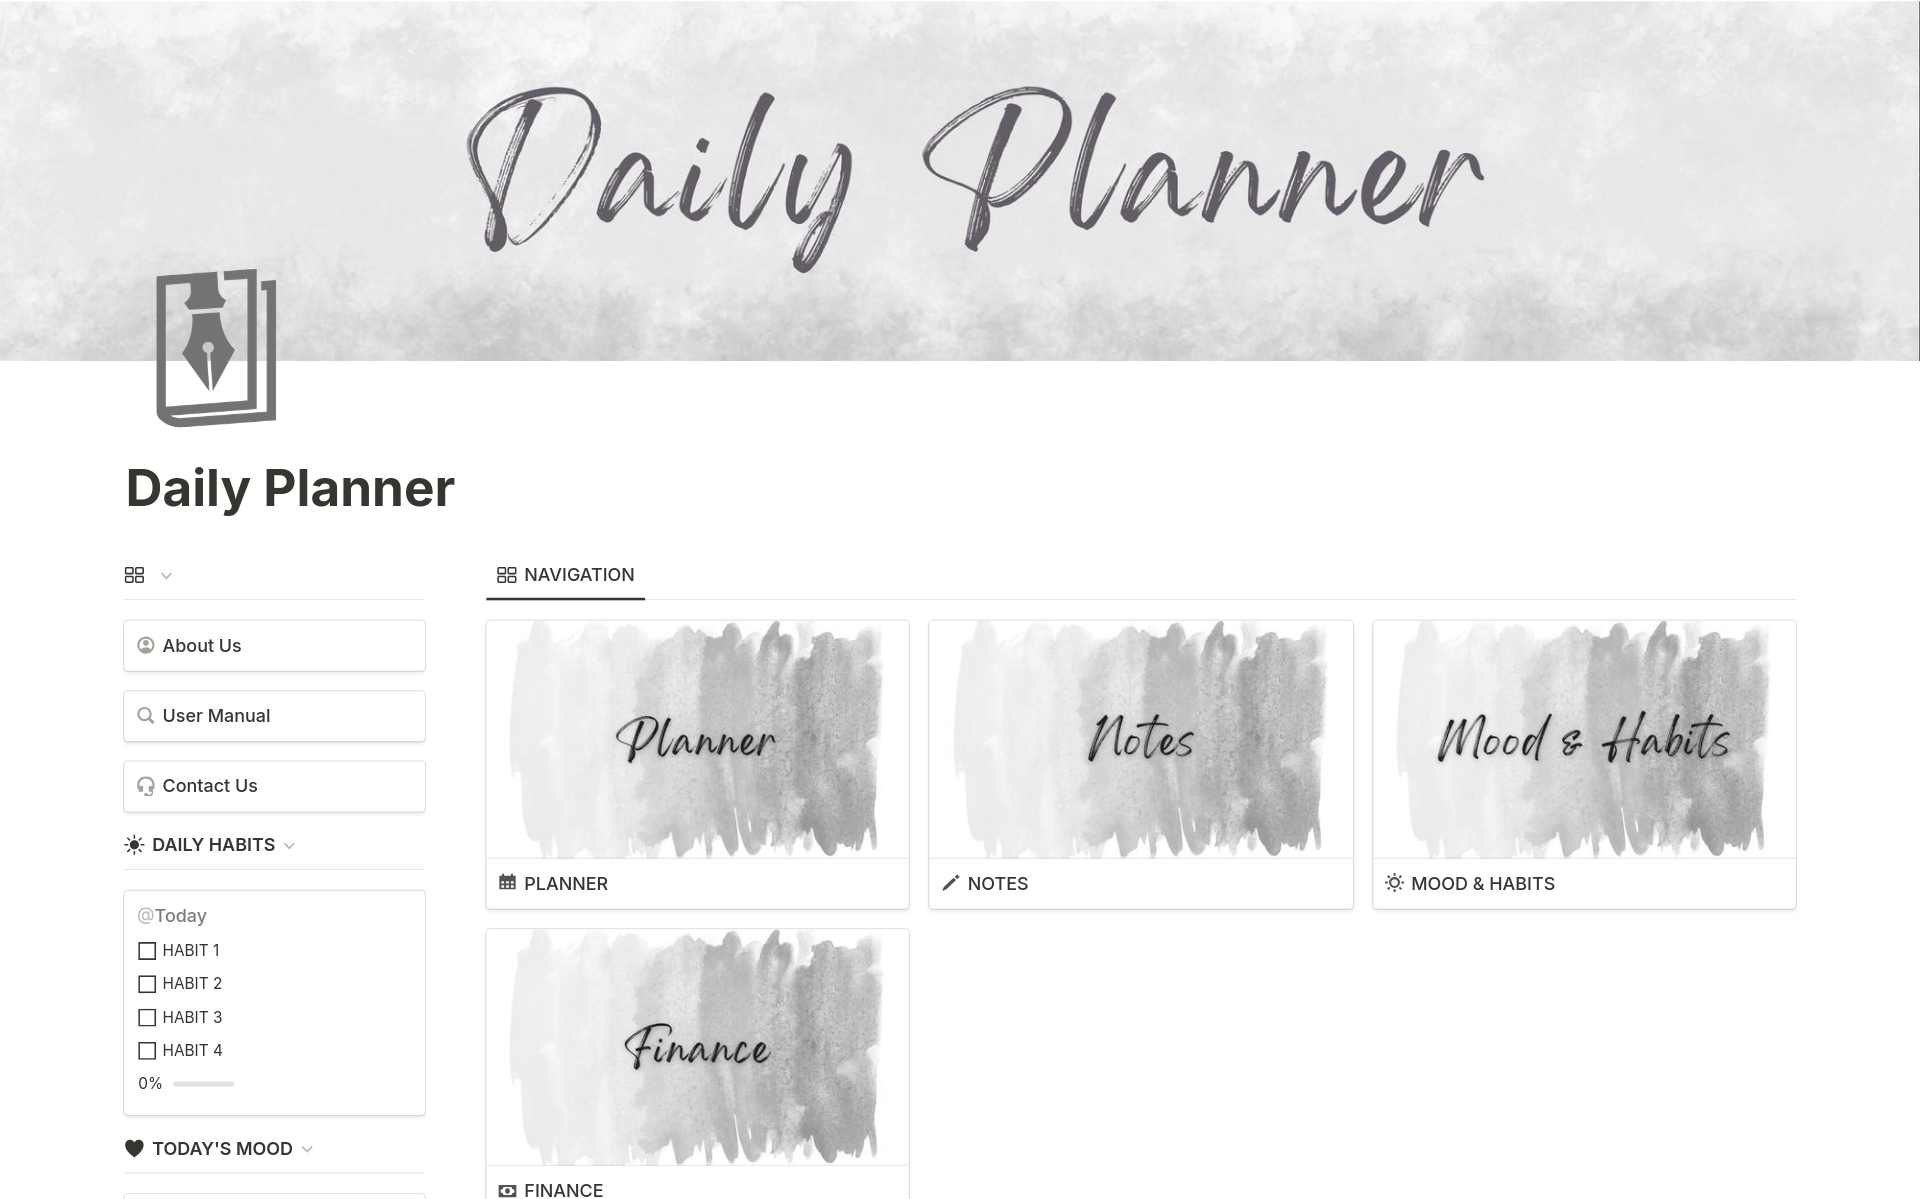 Vista previa de una plantilla para Daily Planner